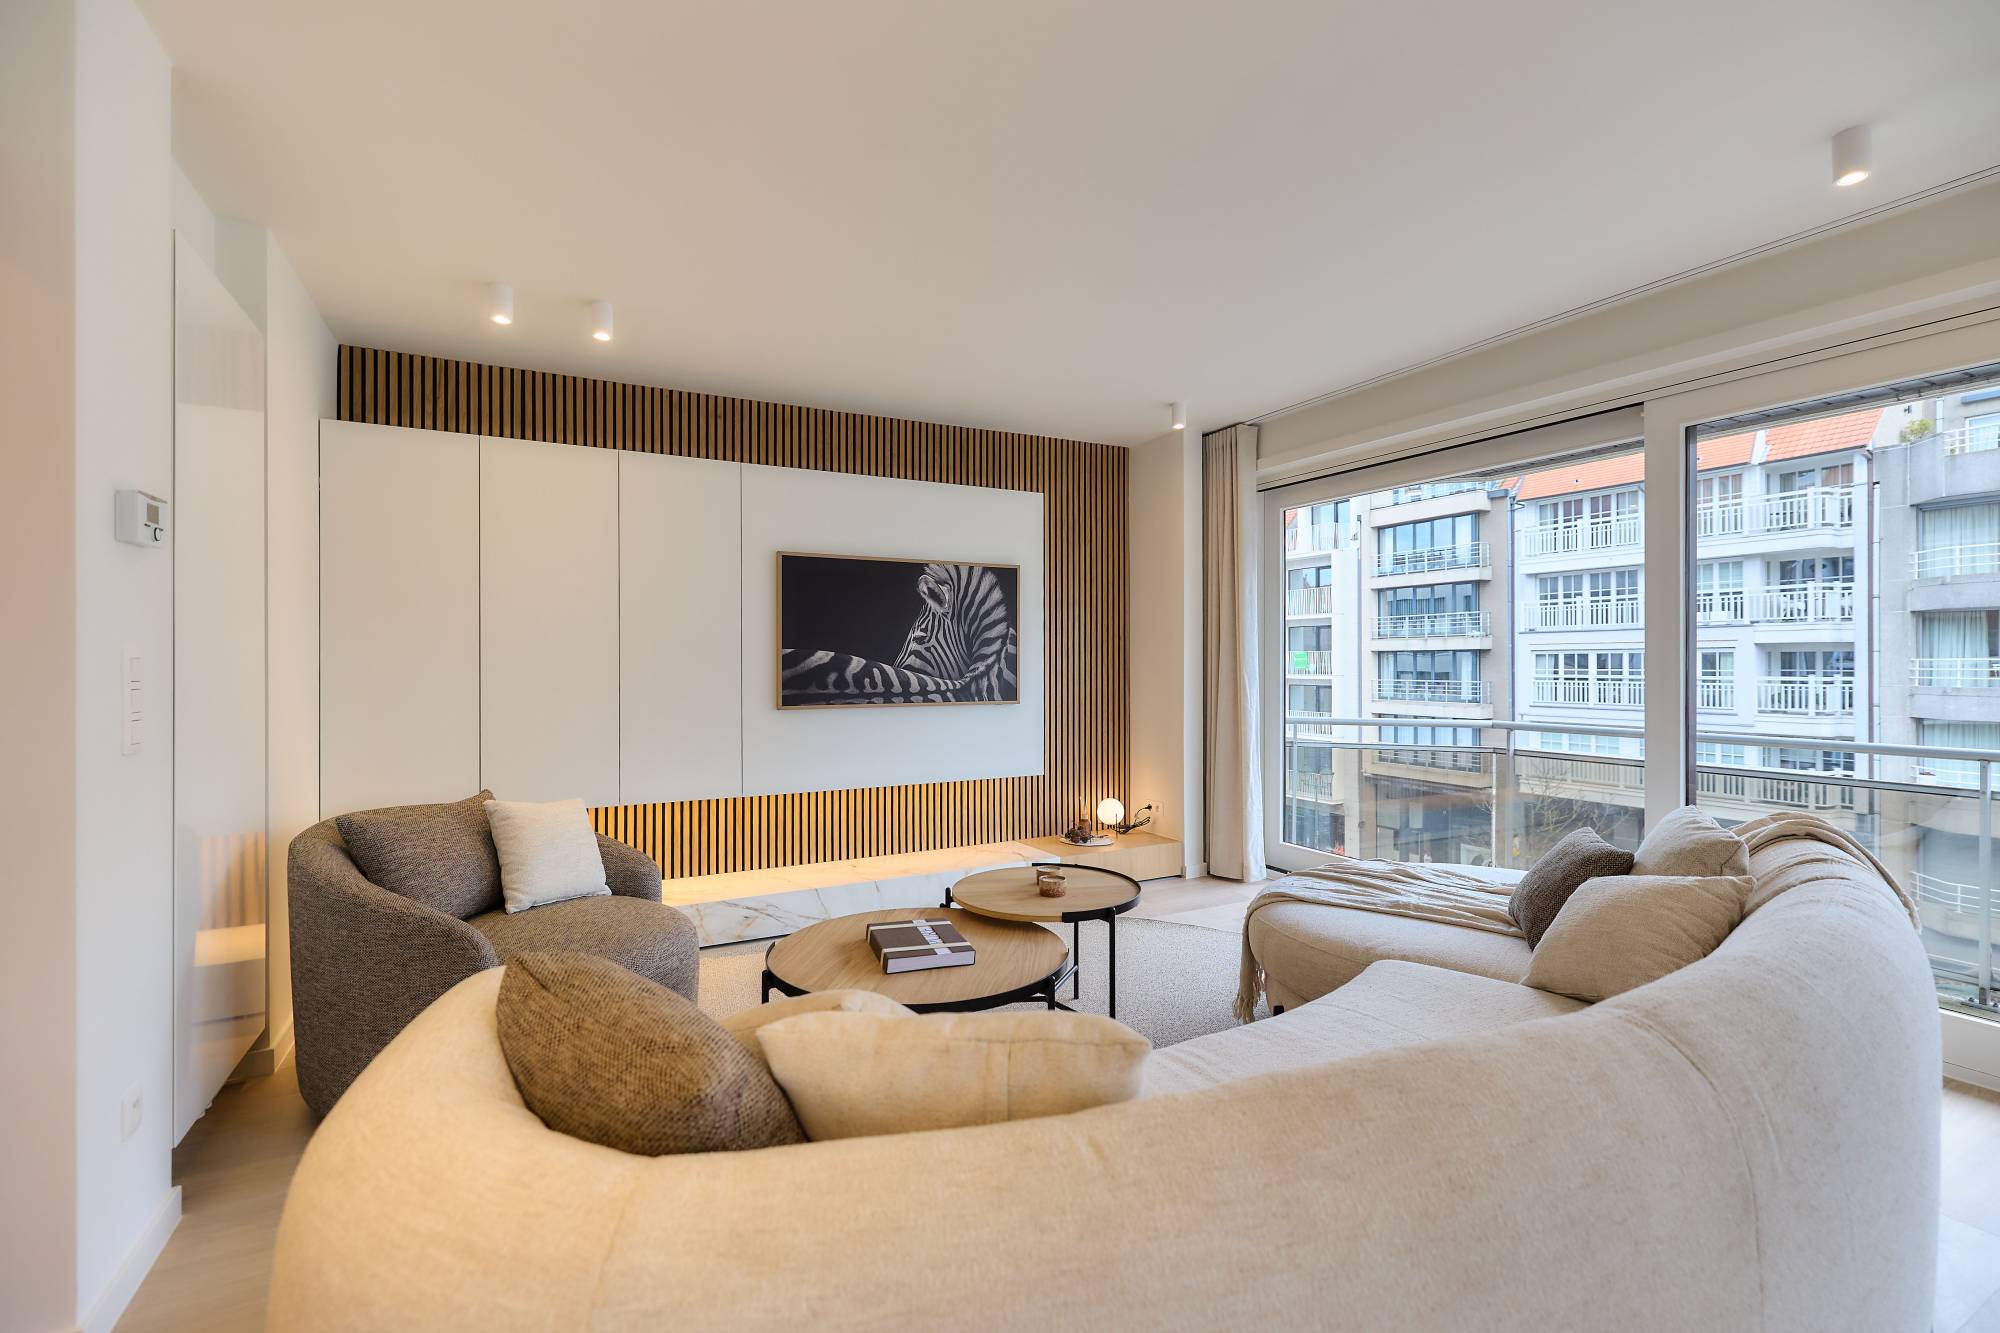 VENTE Appartement 3CH Knokke-Heist - Avenue Lippens / rénovation totale / mobilier INCLUS!